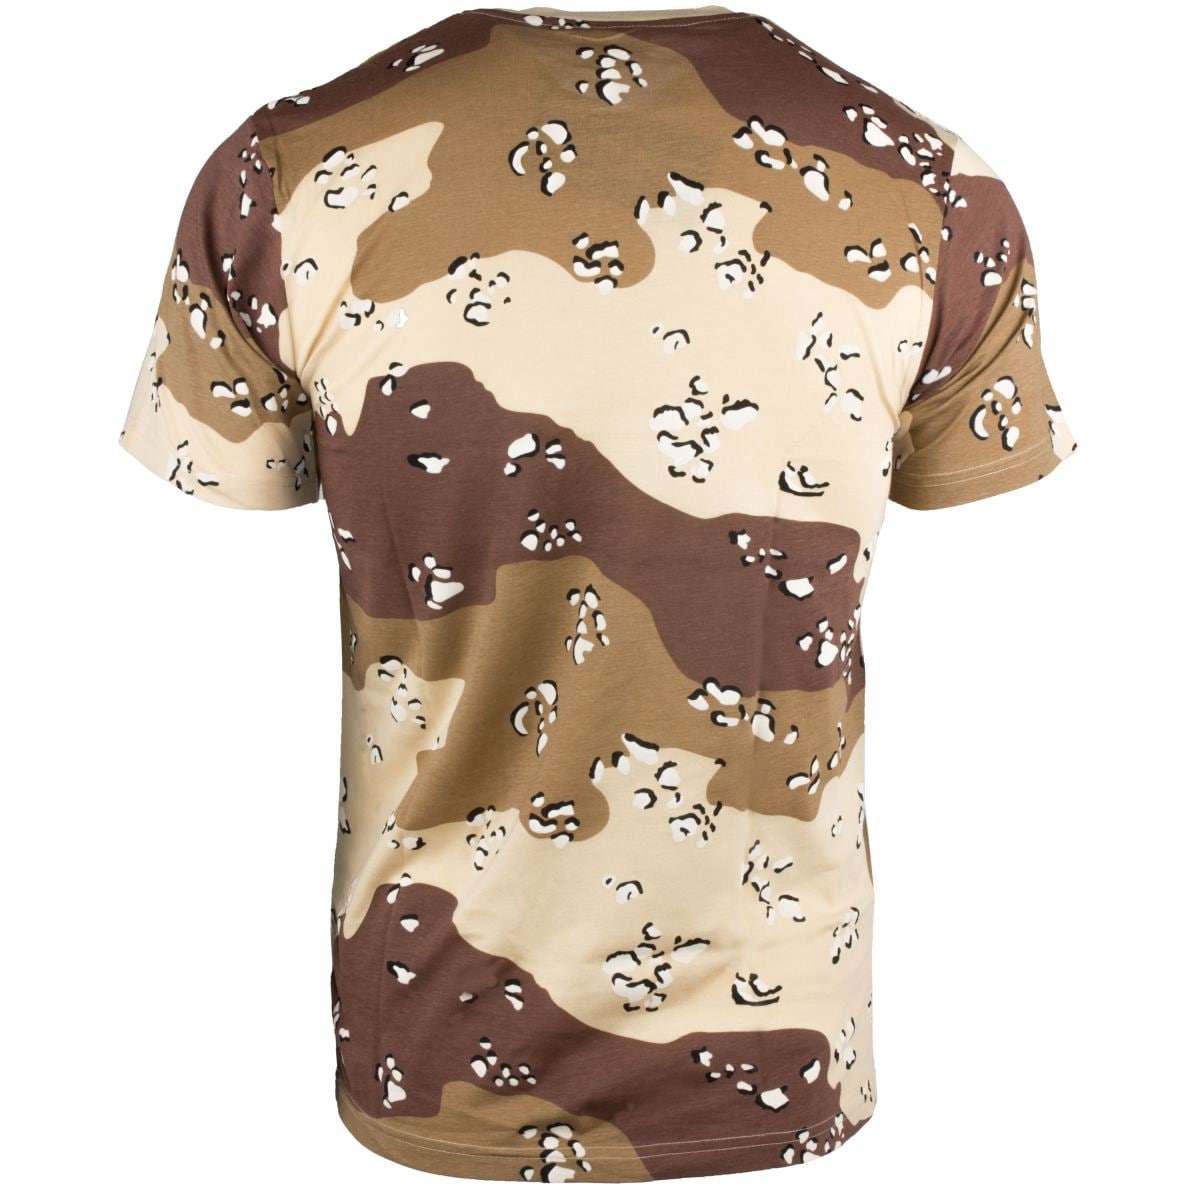 T-Shirt desert 6-color | T-Shirt desert 6-color | Shirts | Shirts | Men ...